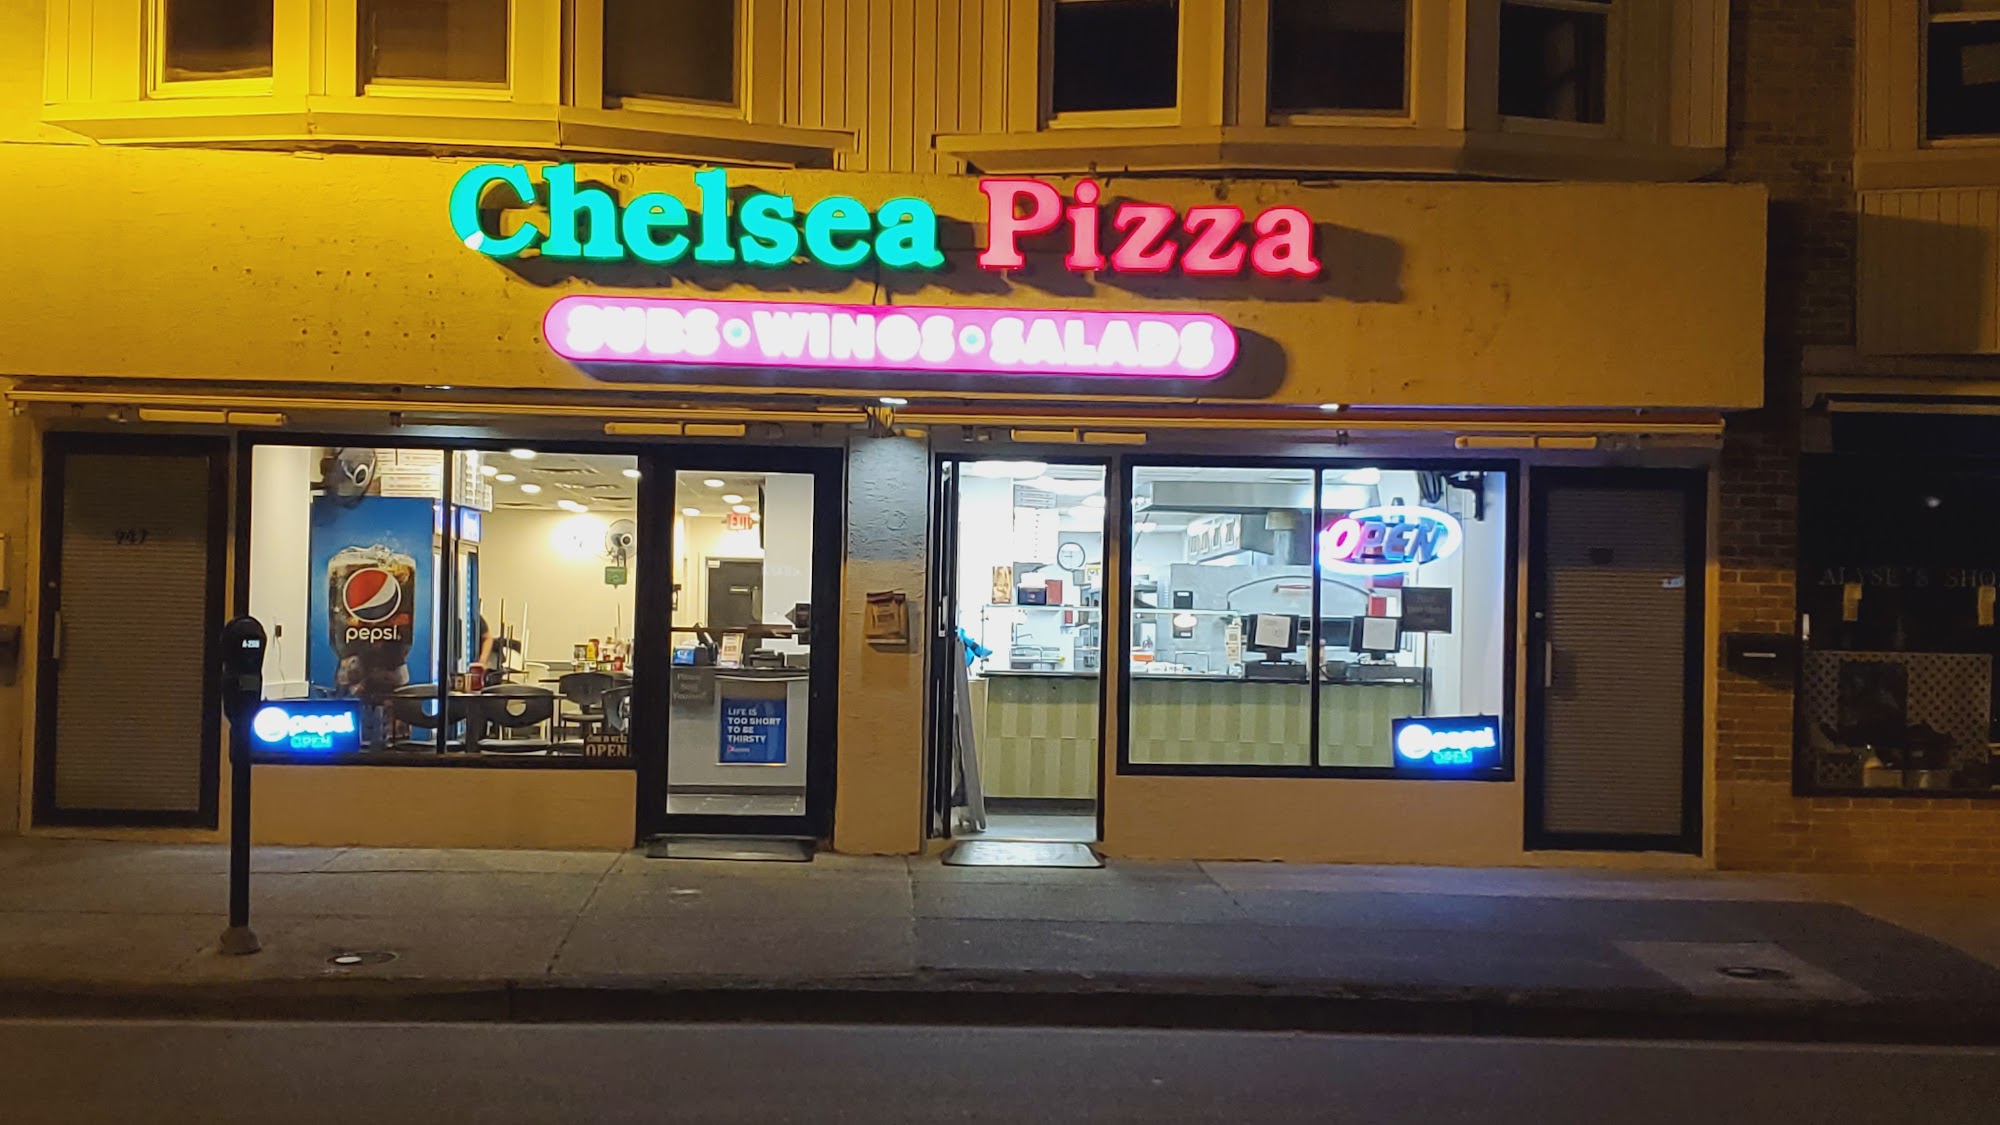 Chelsea pizza